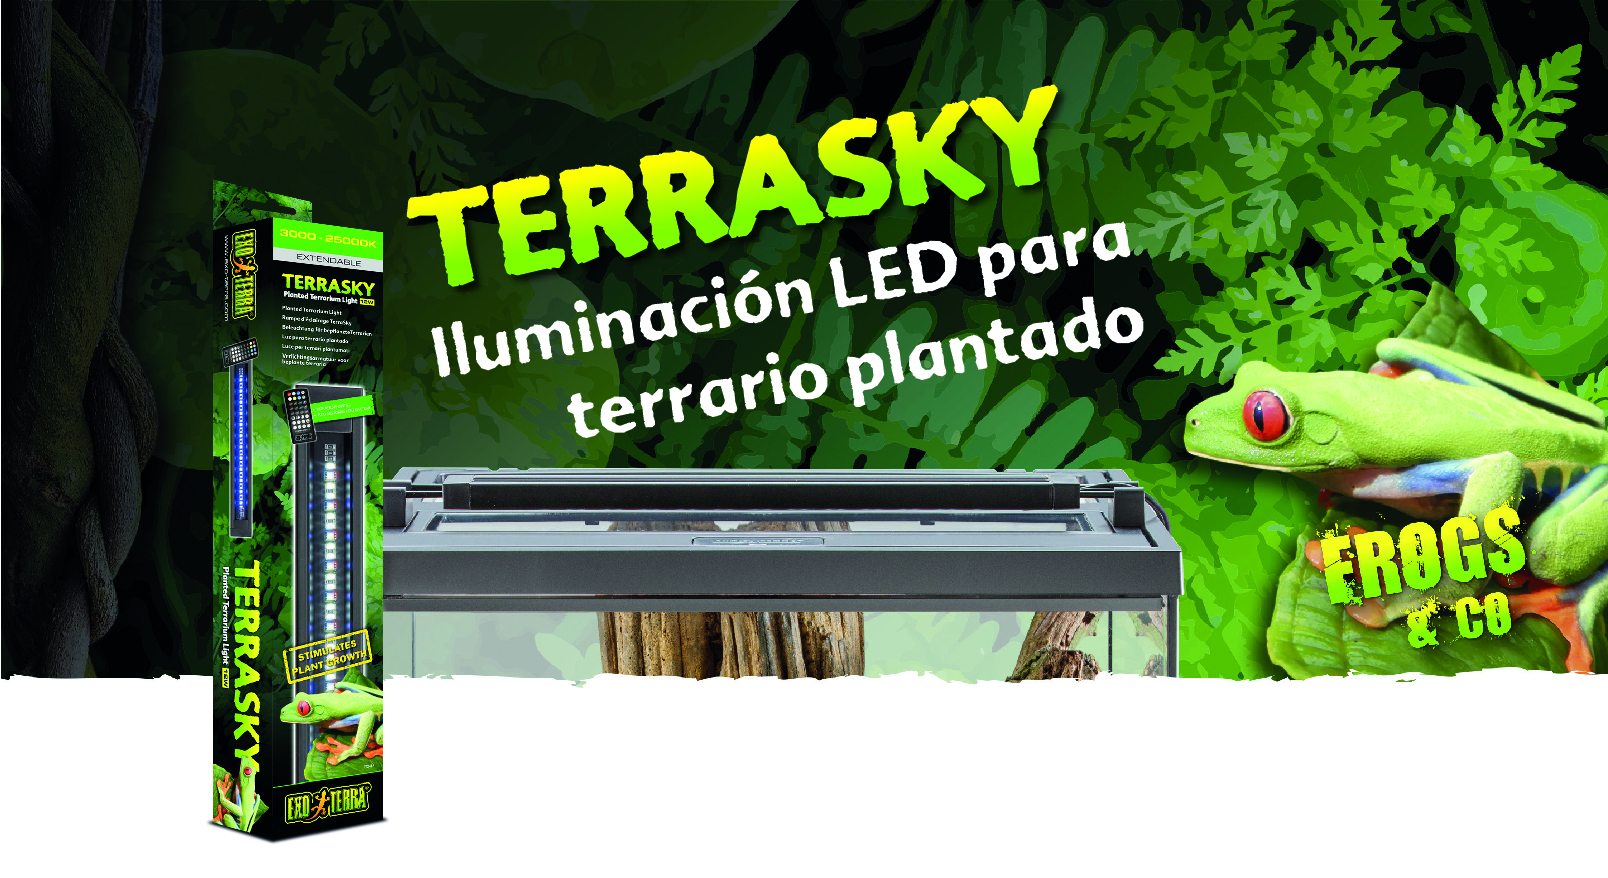 Nueva LED TerraSky Exo Terra de Frog & Co